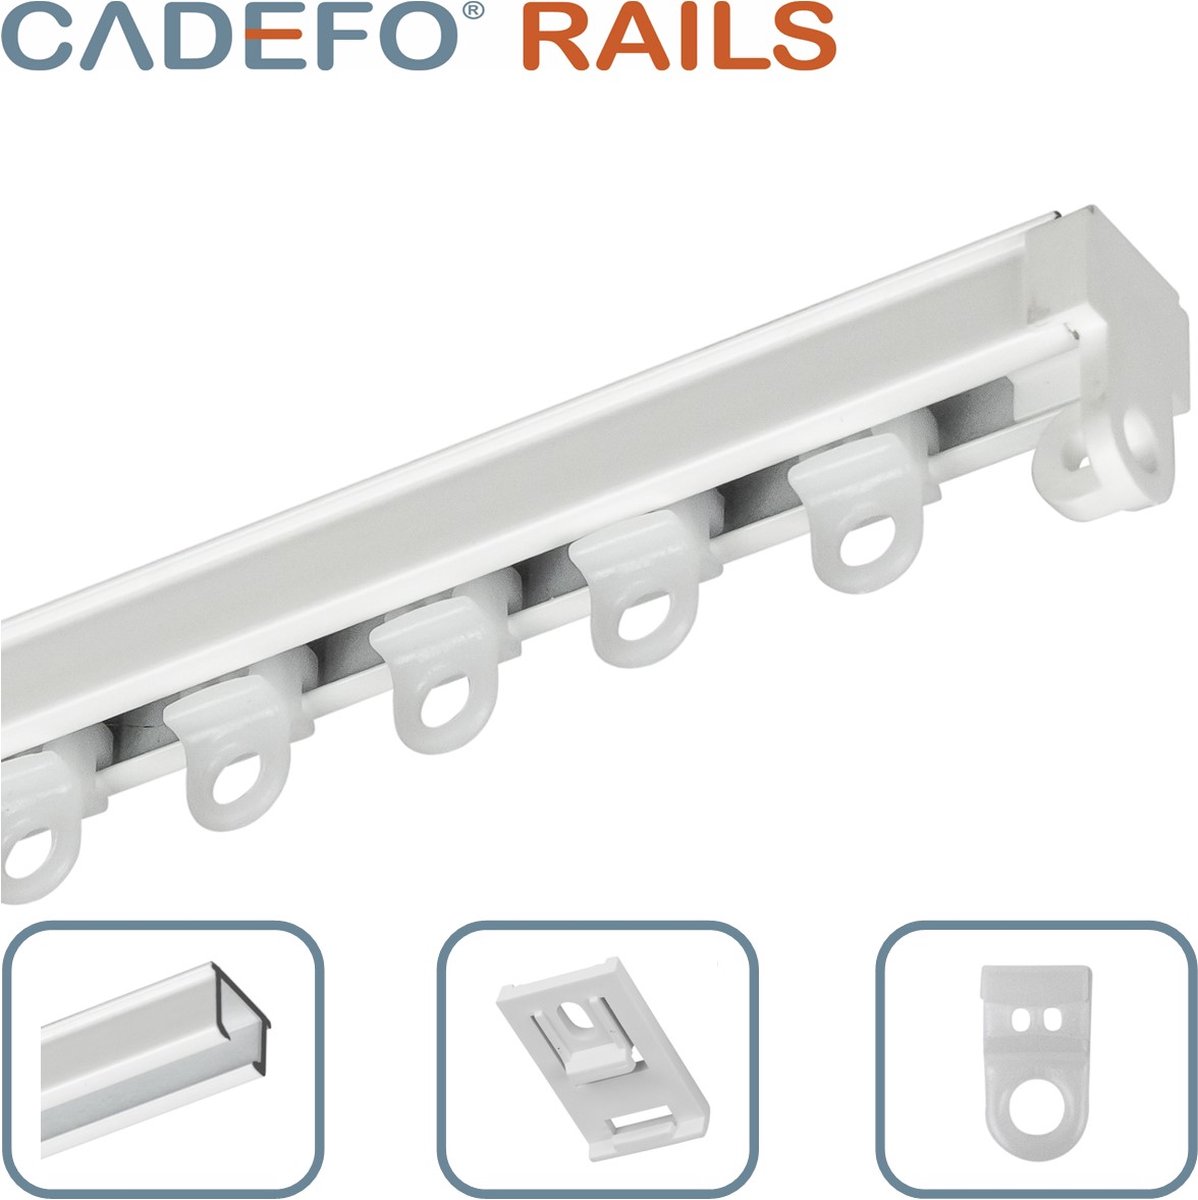 CADEFO RAILS (501 - 550 cm) Gordijnrails - Compleet op maat! - UIT 1 STUK - Leverbaar tot 6 meter - Plafondbevestiging - Lengte 521 cm